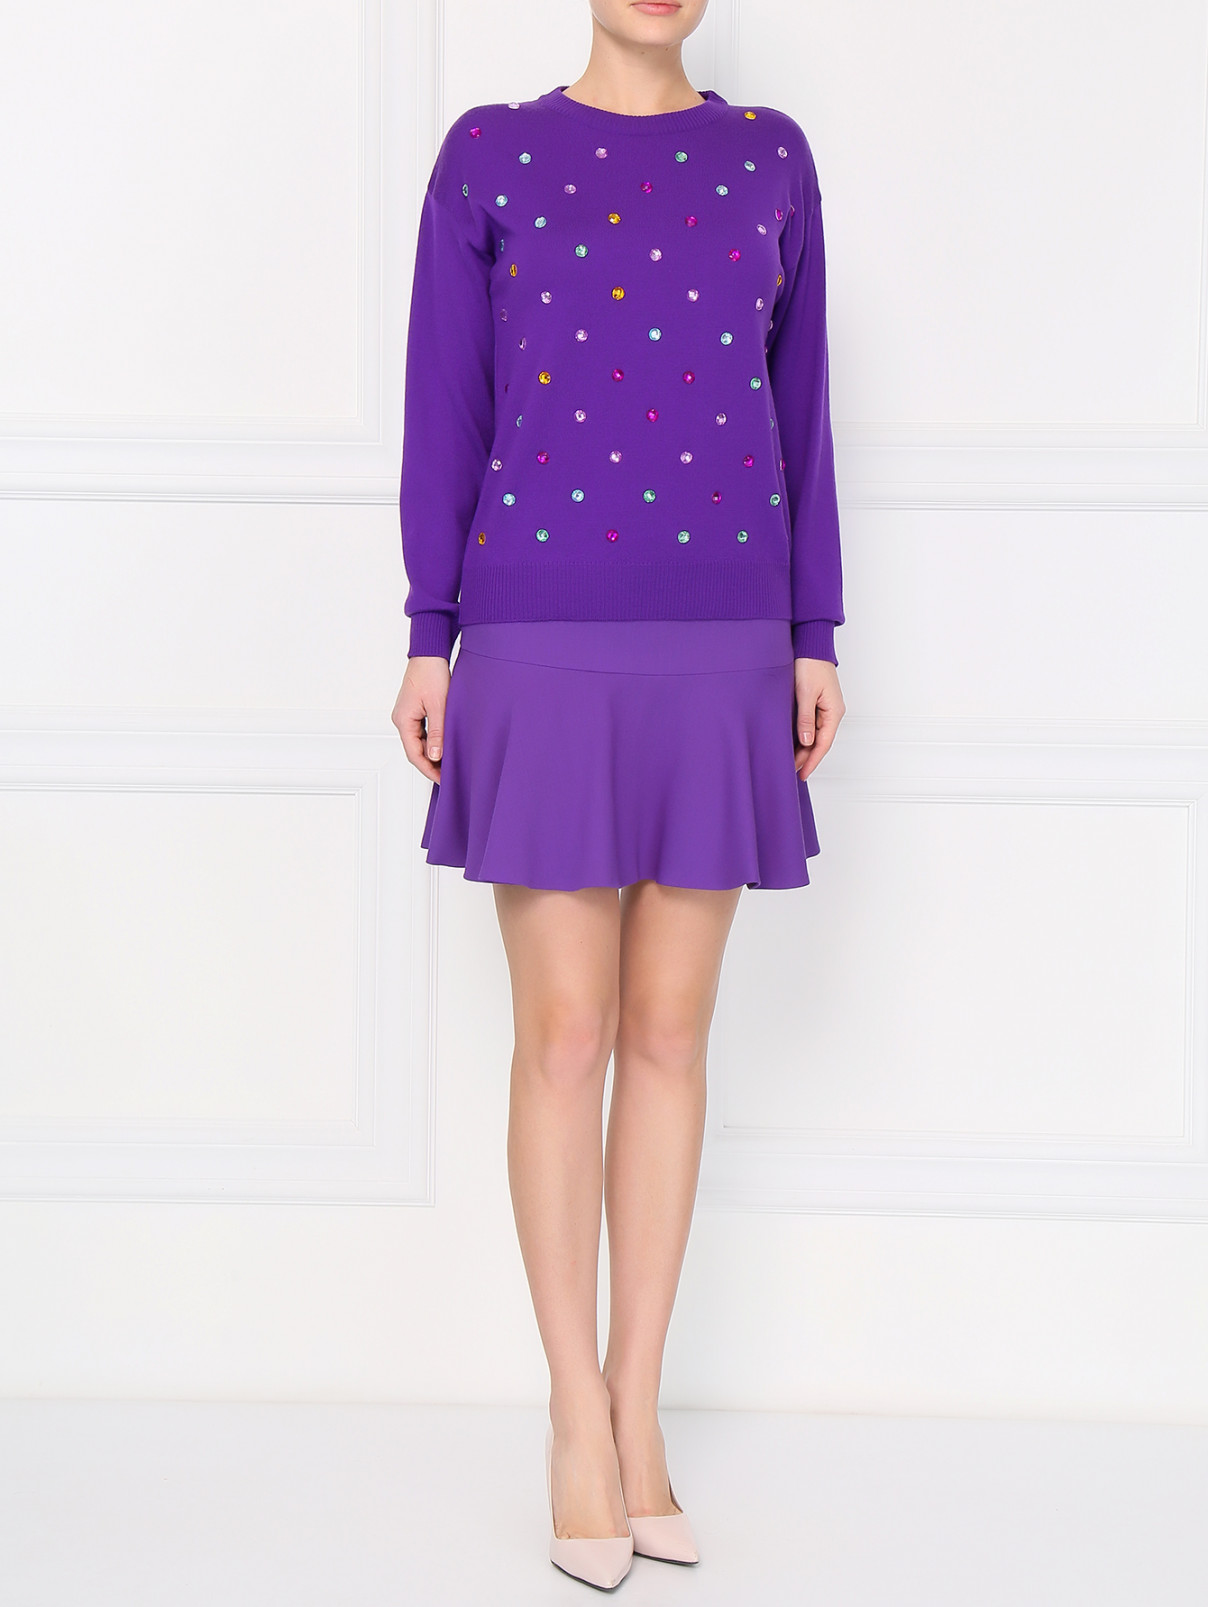 Мини-юбка из шерсти Moschino Boutique  –  Модель Общий вид  – Цвет:  Фиолетовый